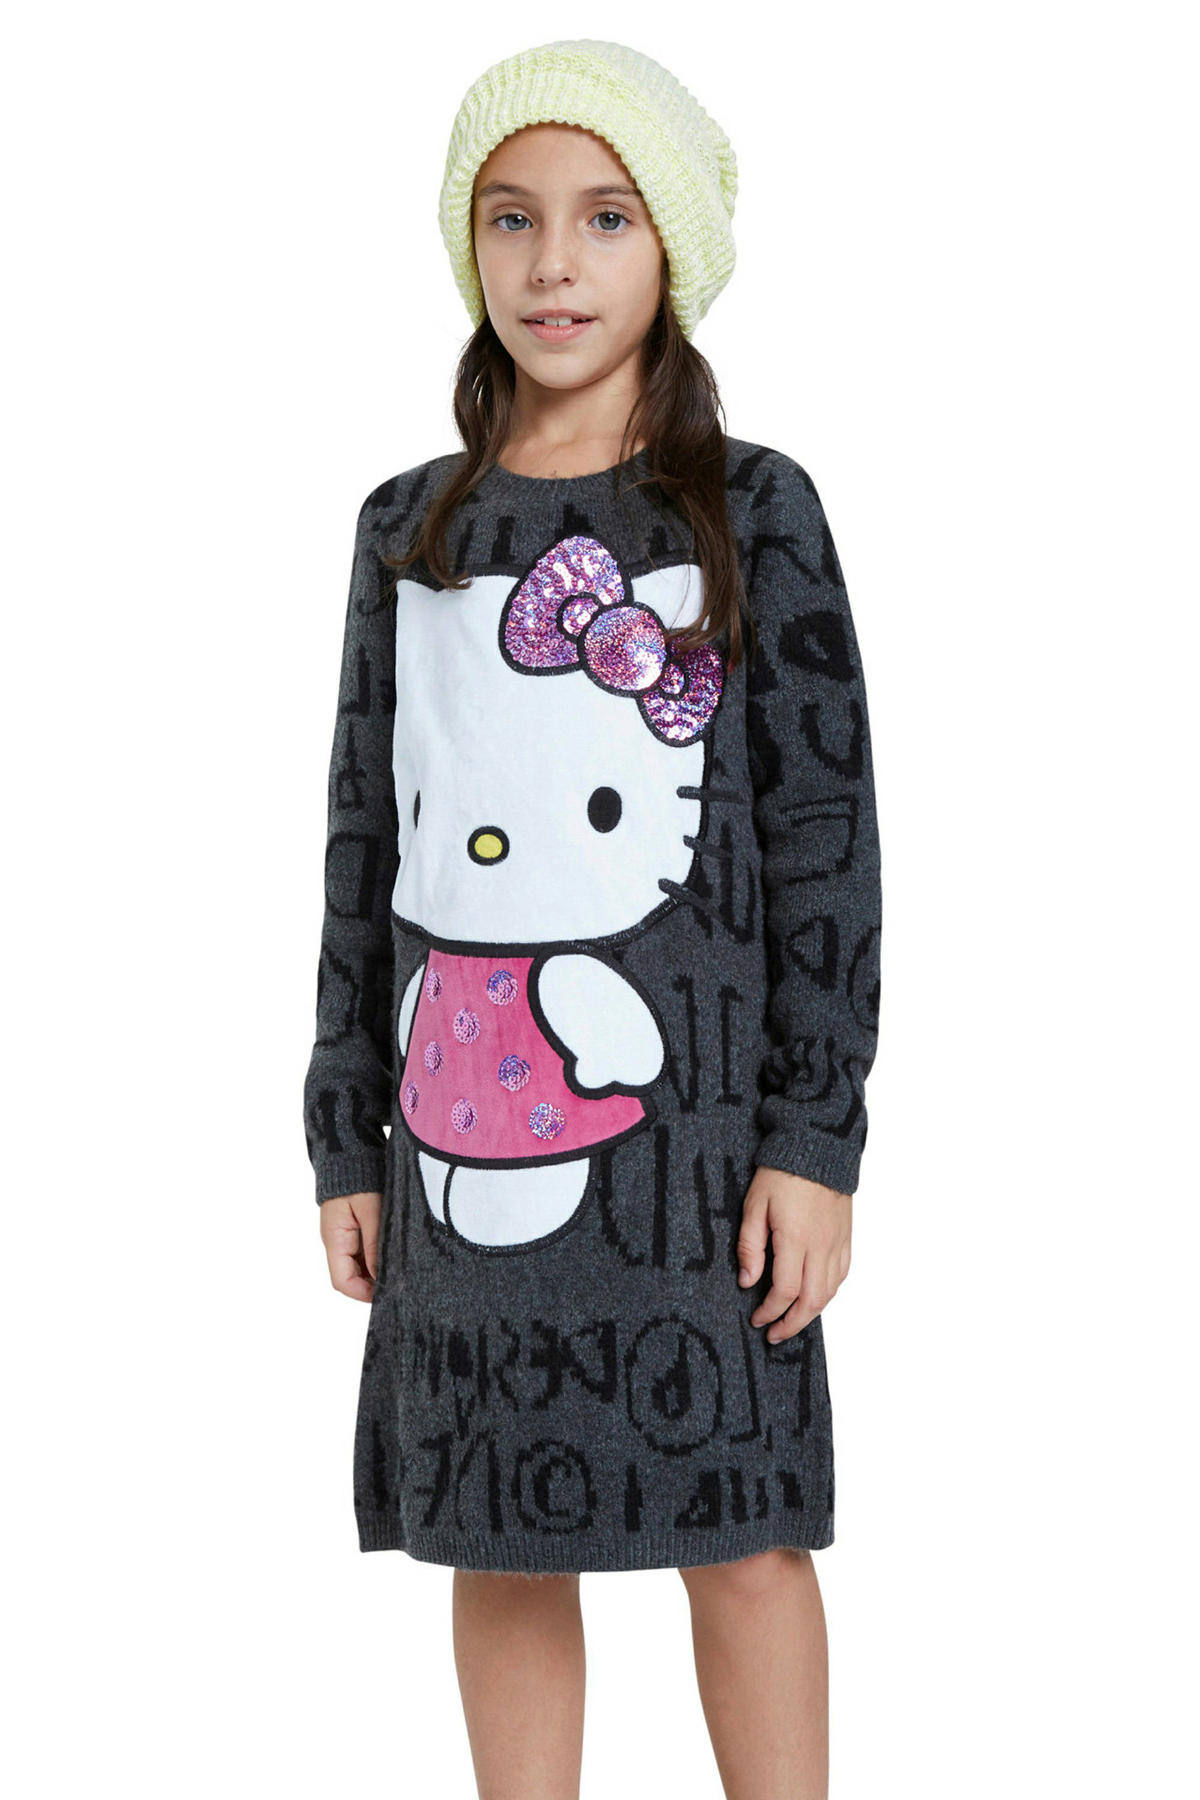 Elegantie knal Ruwe olie Desigual Hello Kitty jurk grijs melange | wehkamp